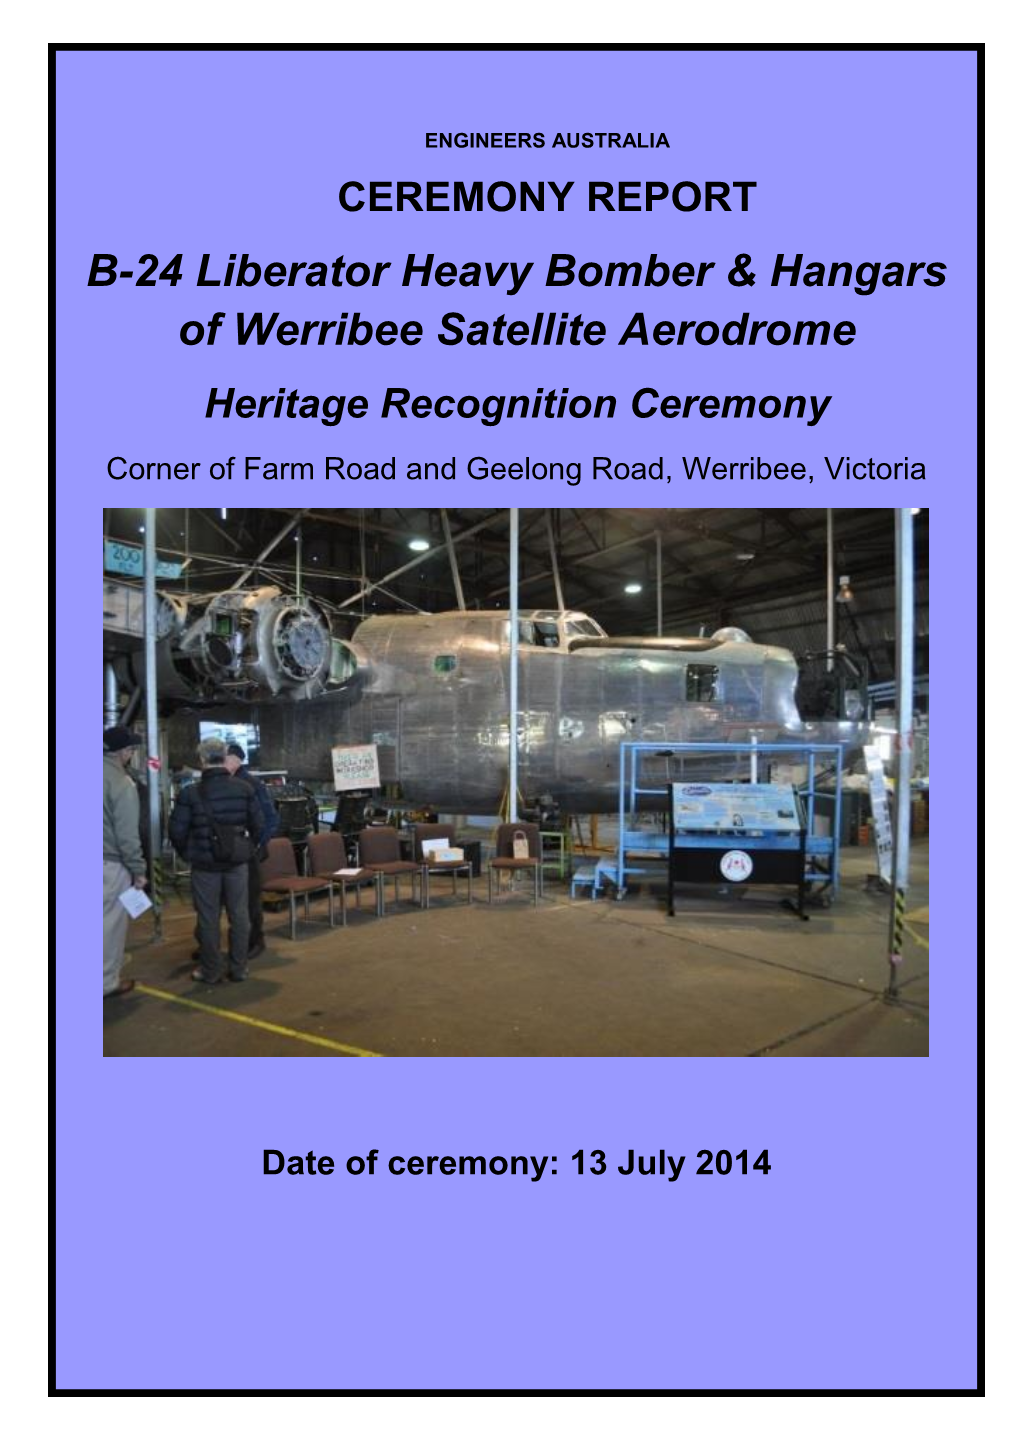 B-24 Liberator Heavy Bomber & Hangars of Werribee Satellite Aerodrome